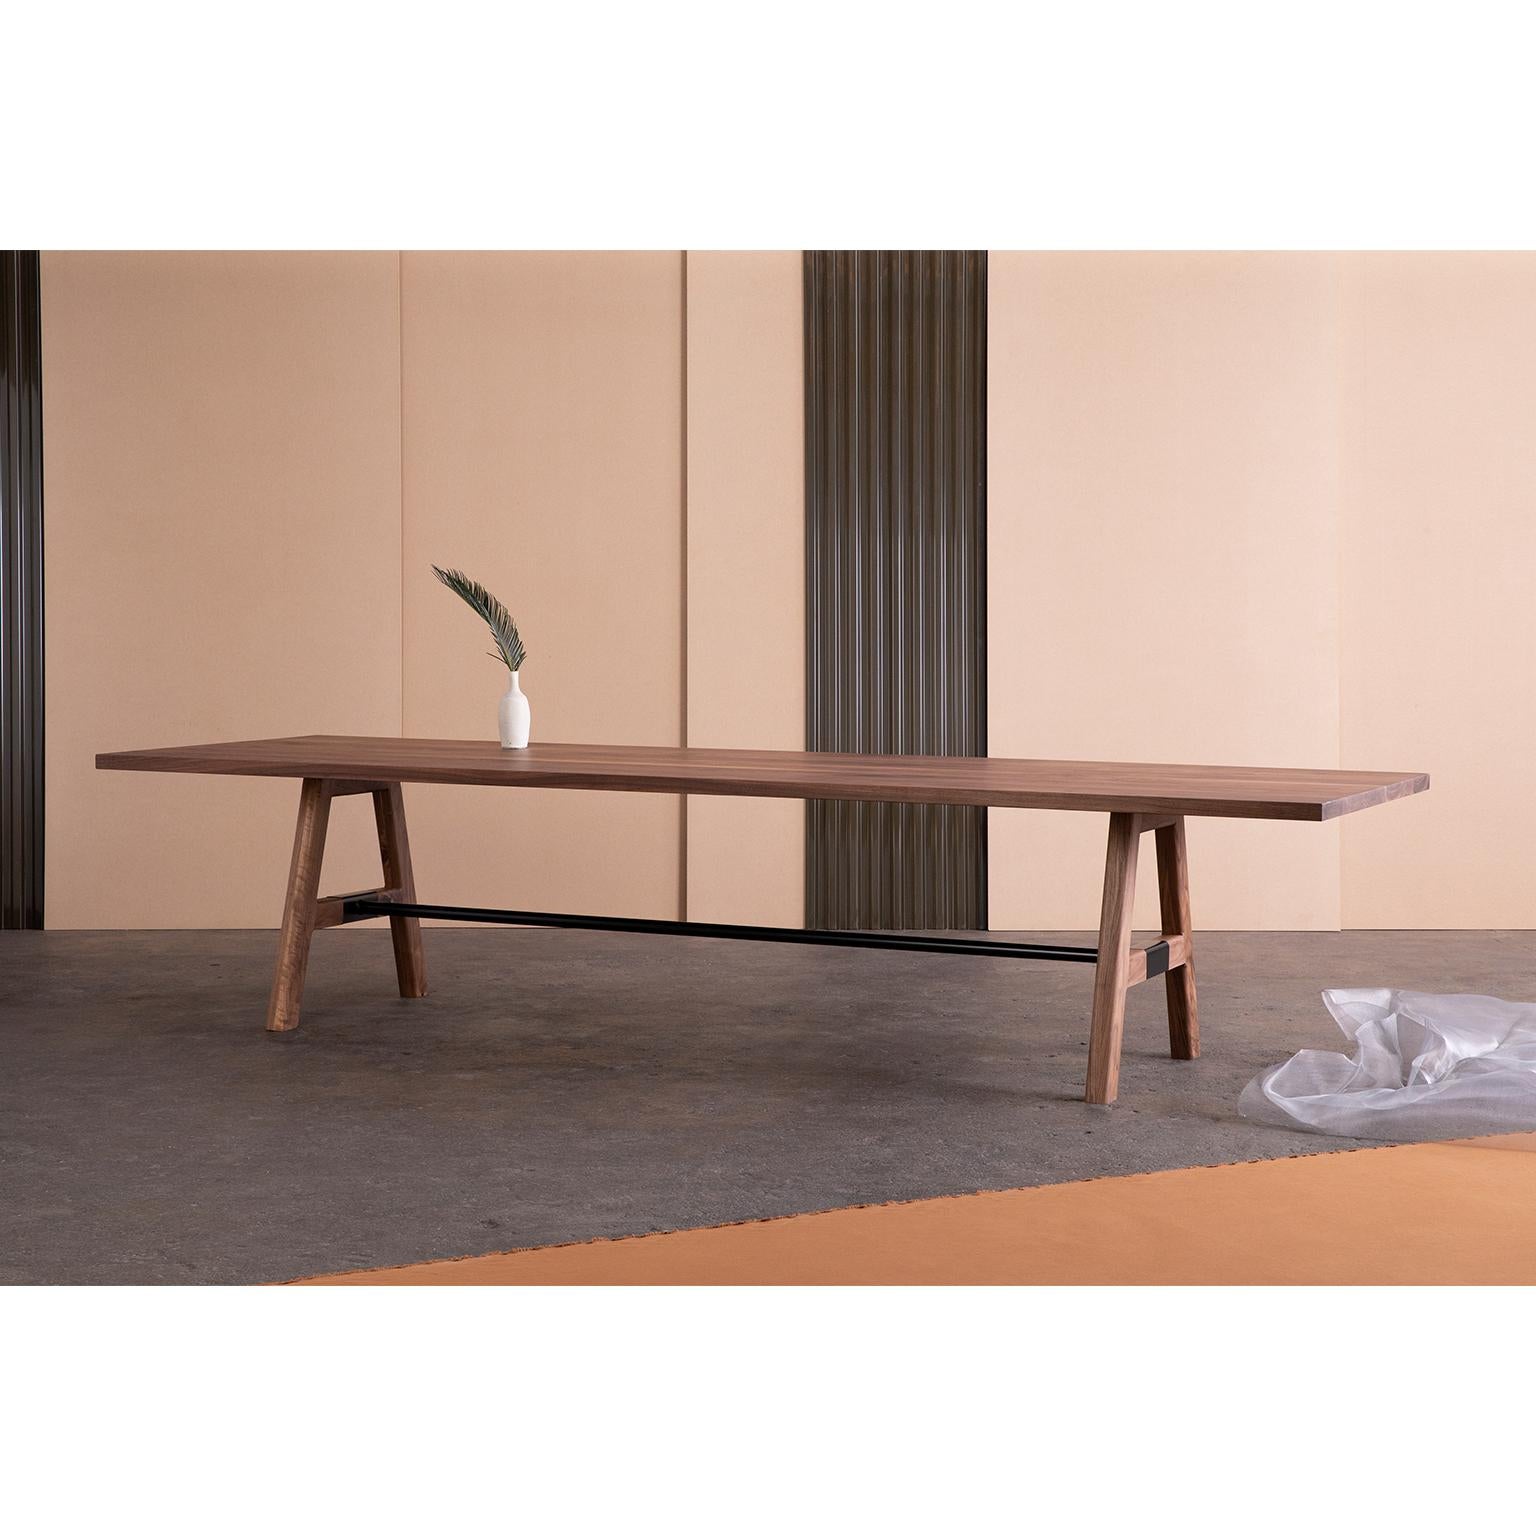 La table de conférence A-Frame possède toutes les caractéristiques d'un meuble fabriqué à la main, mais avec un raffinement que l'on ne trouve que chez les artisans. Le châssis métallique à double usage de la table ajoute un soutien supplémentaire